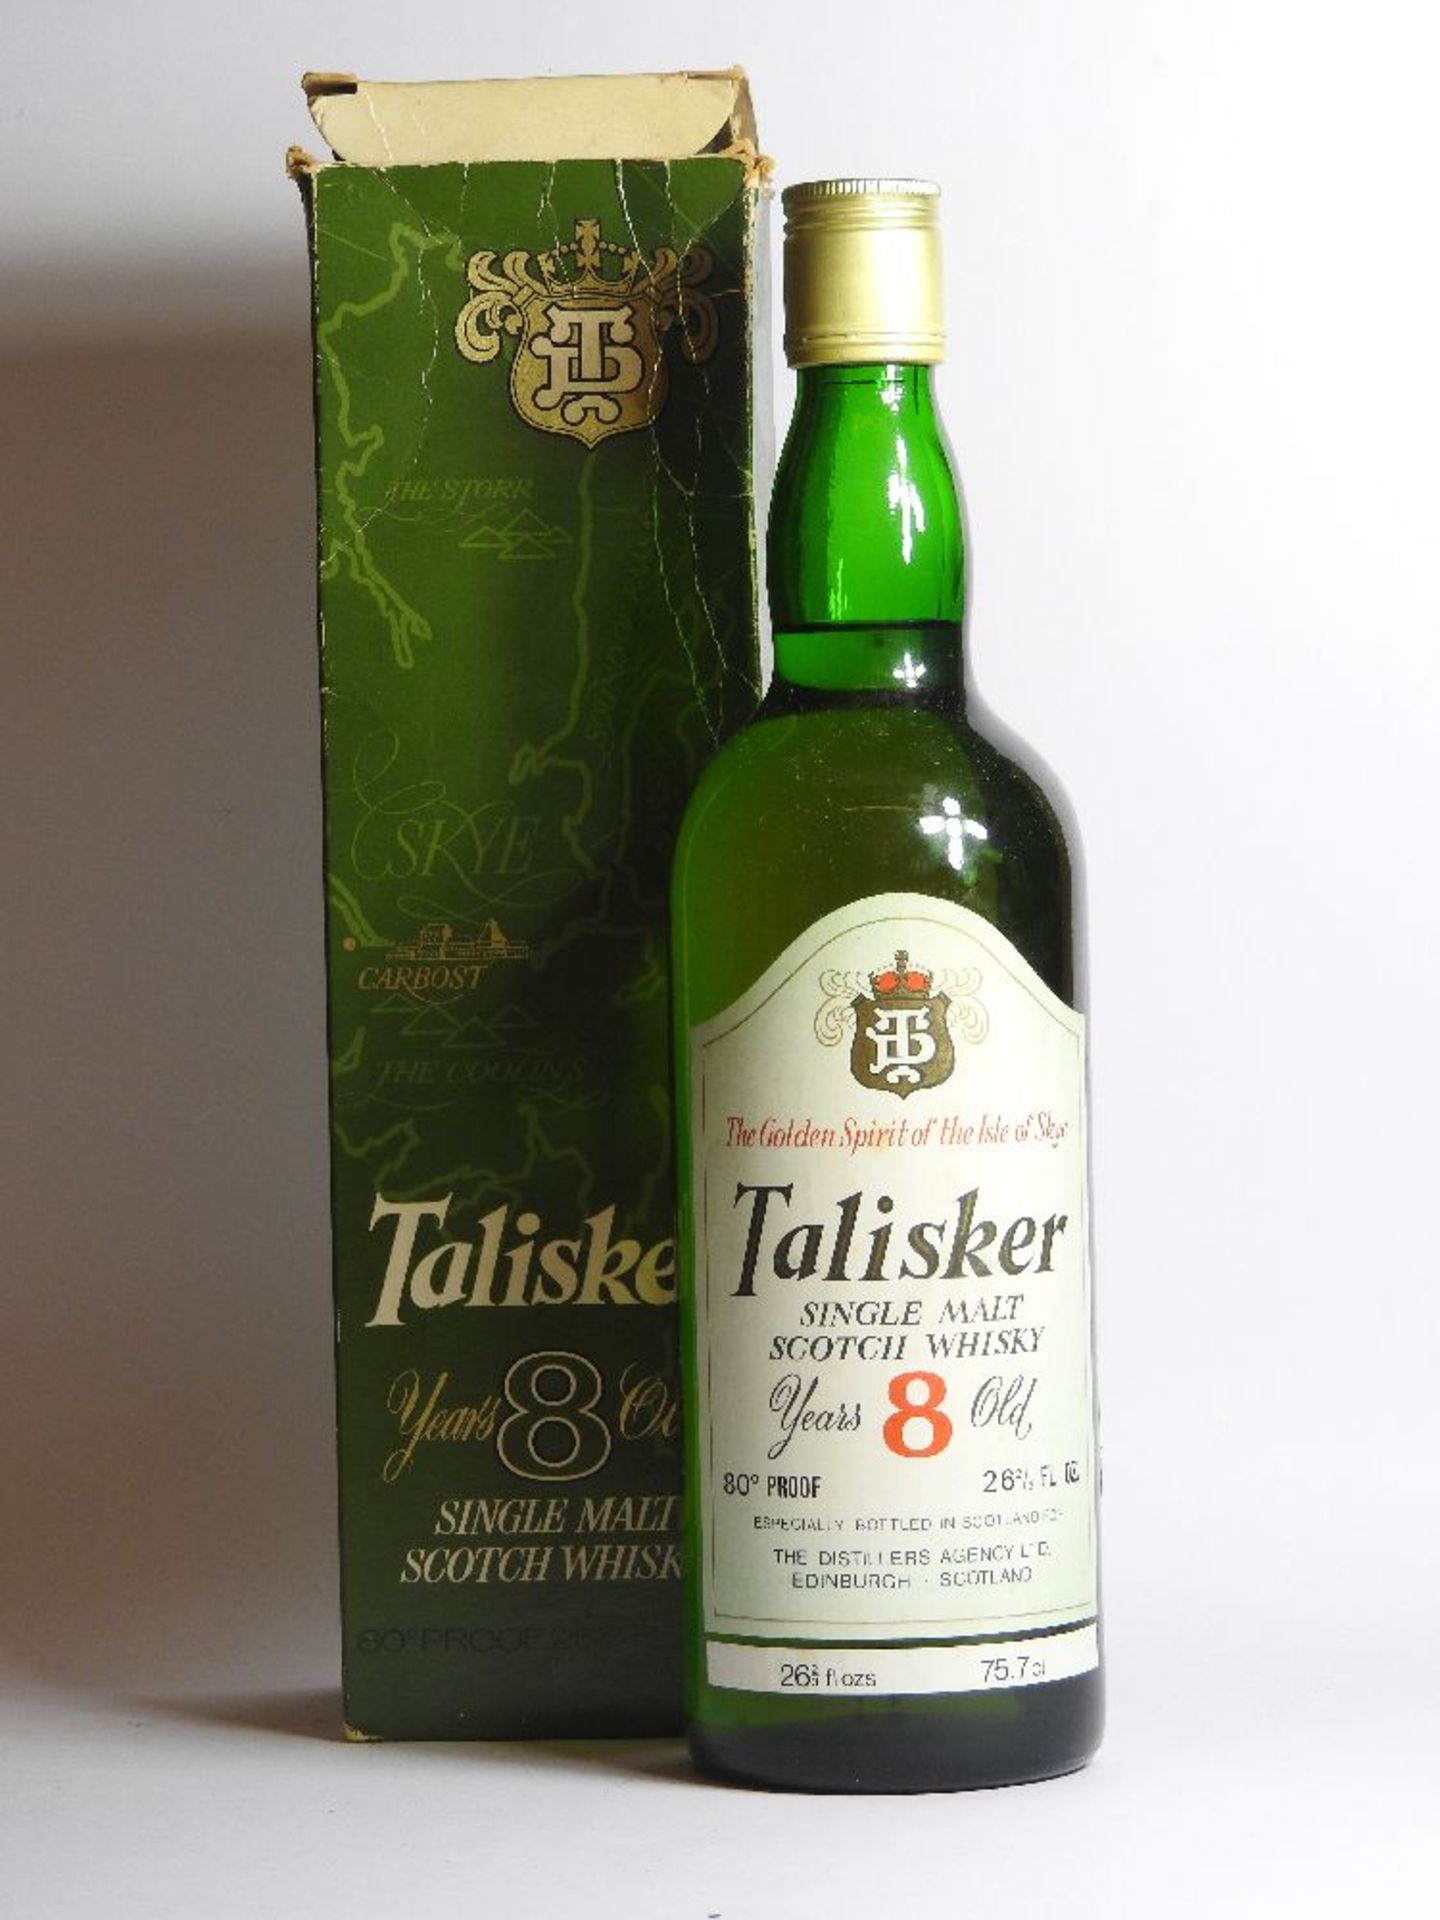 Talisker Single Malt, 8 Year Old, one bottle (boxed)